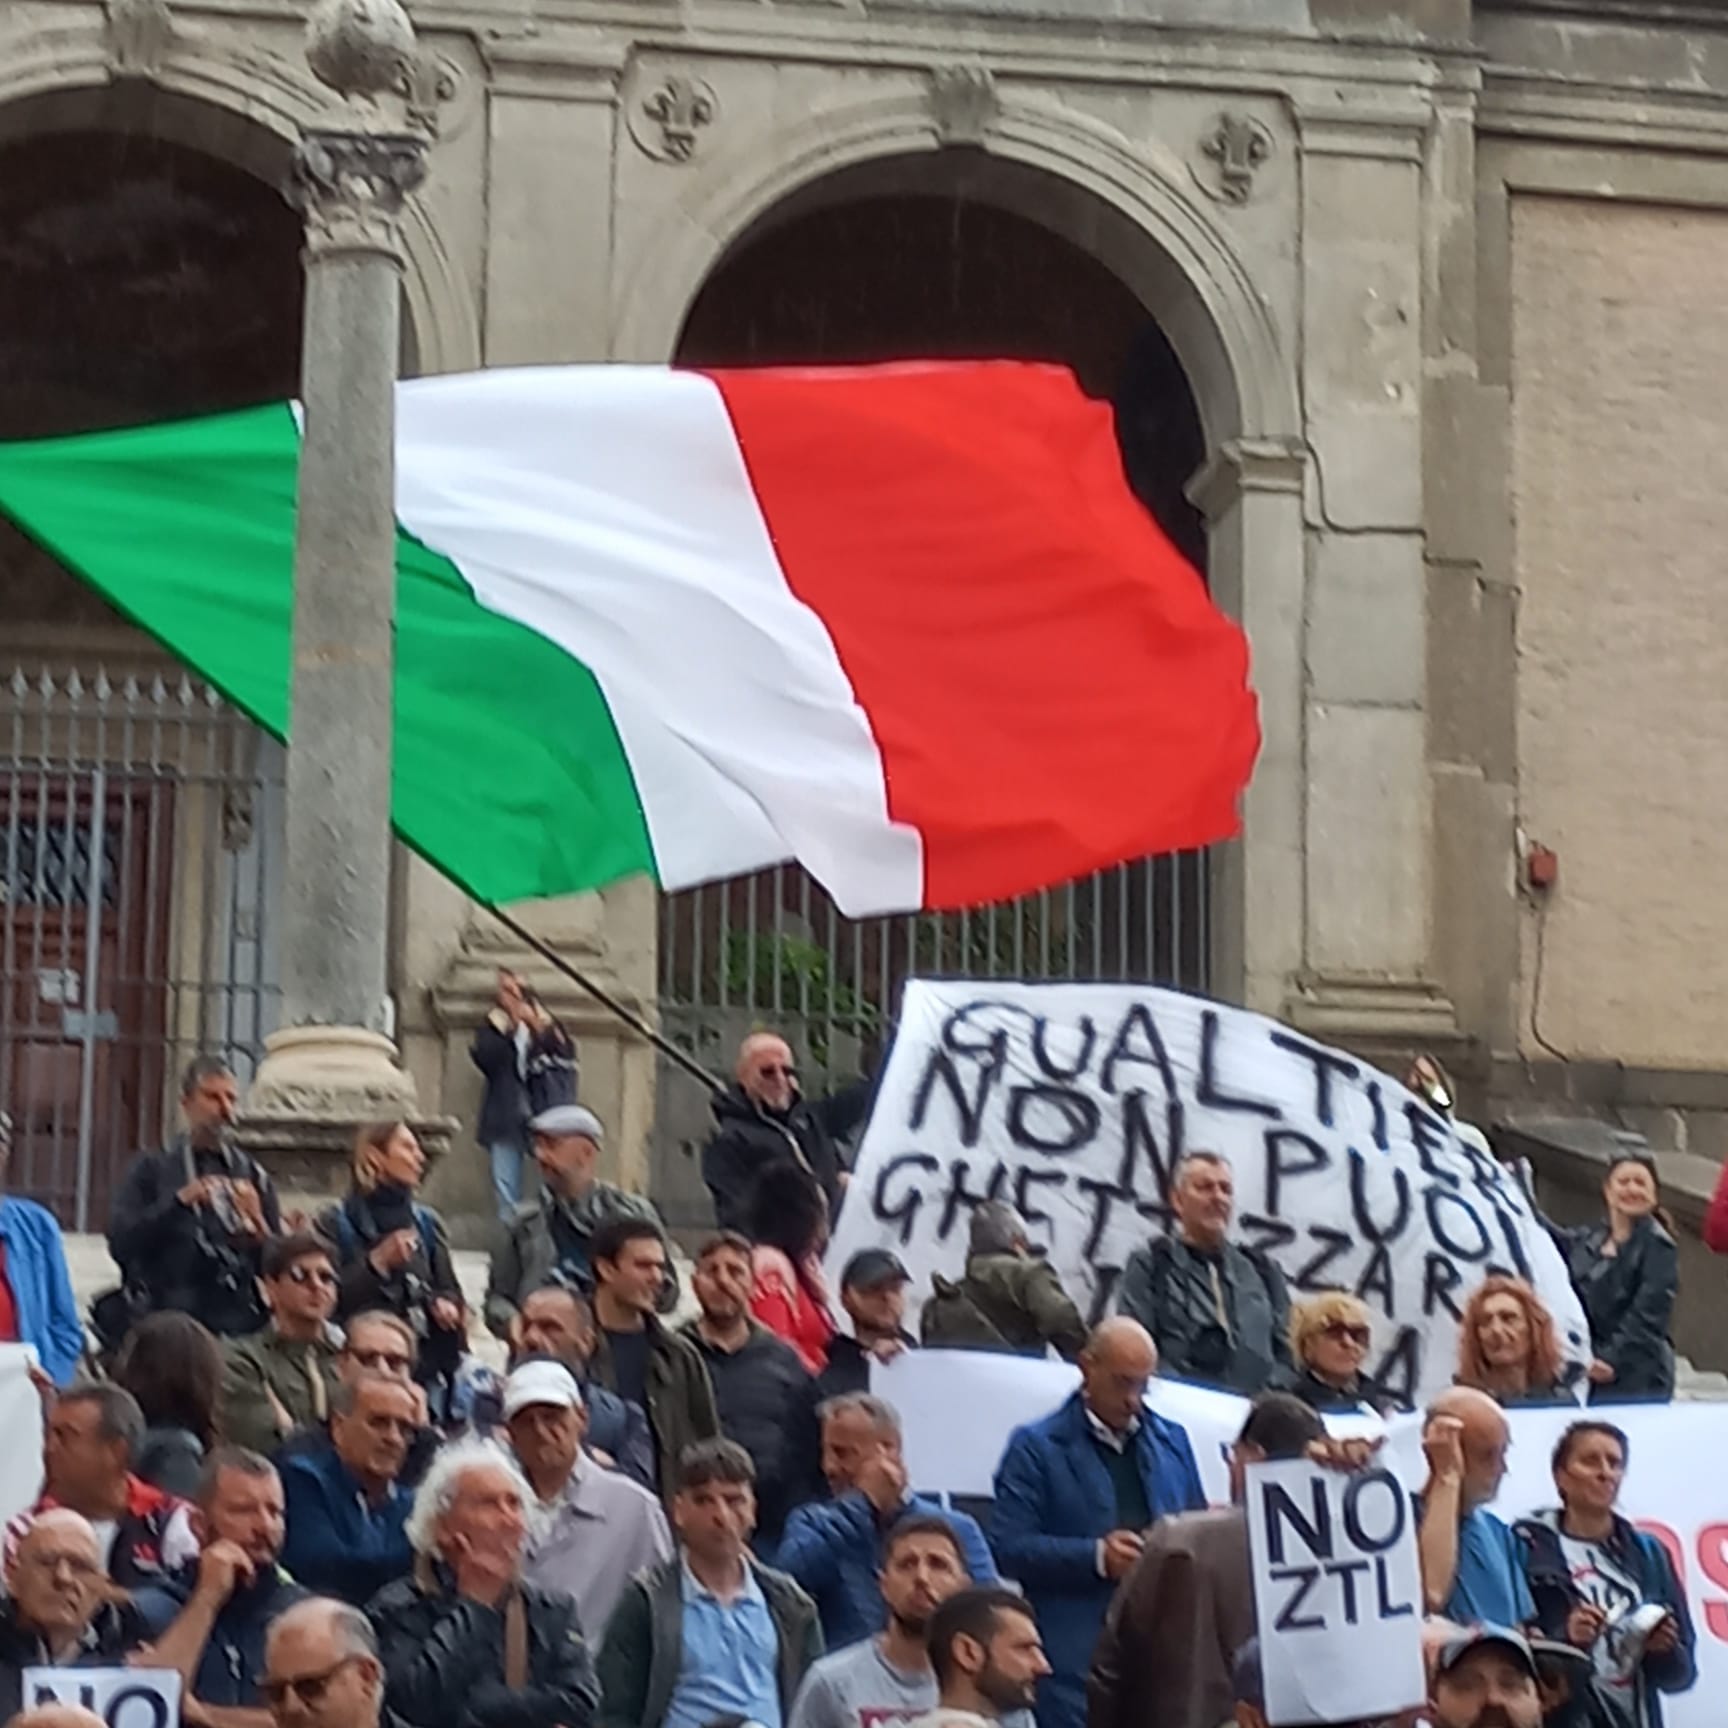 ITALIA LIBERA: UN GRIDI DI LOTTA!